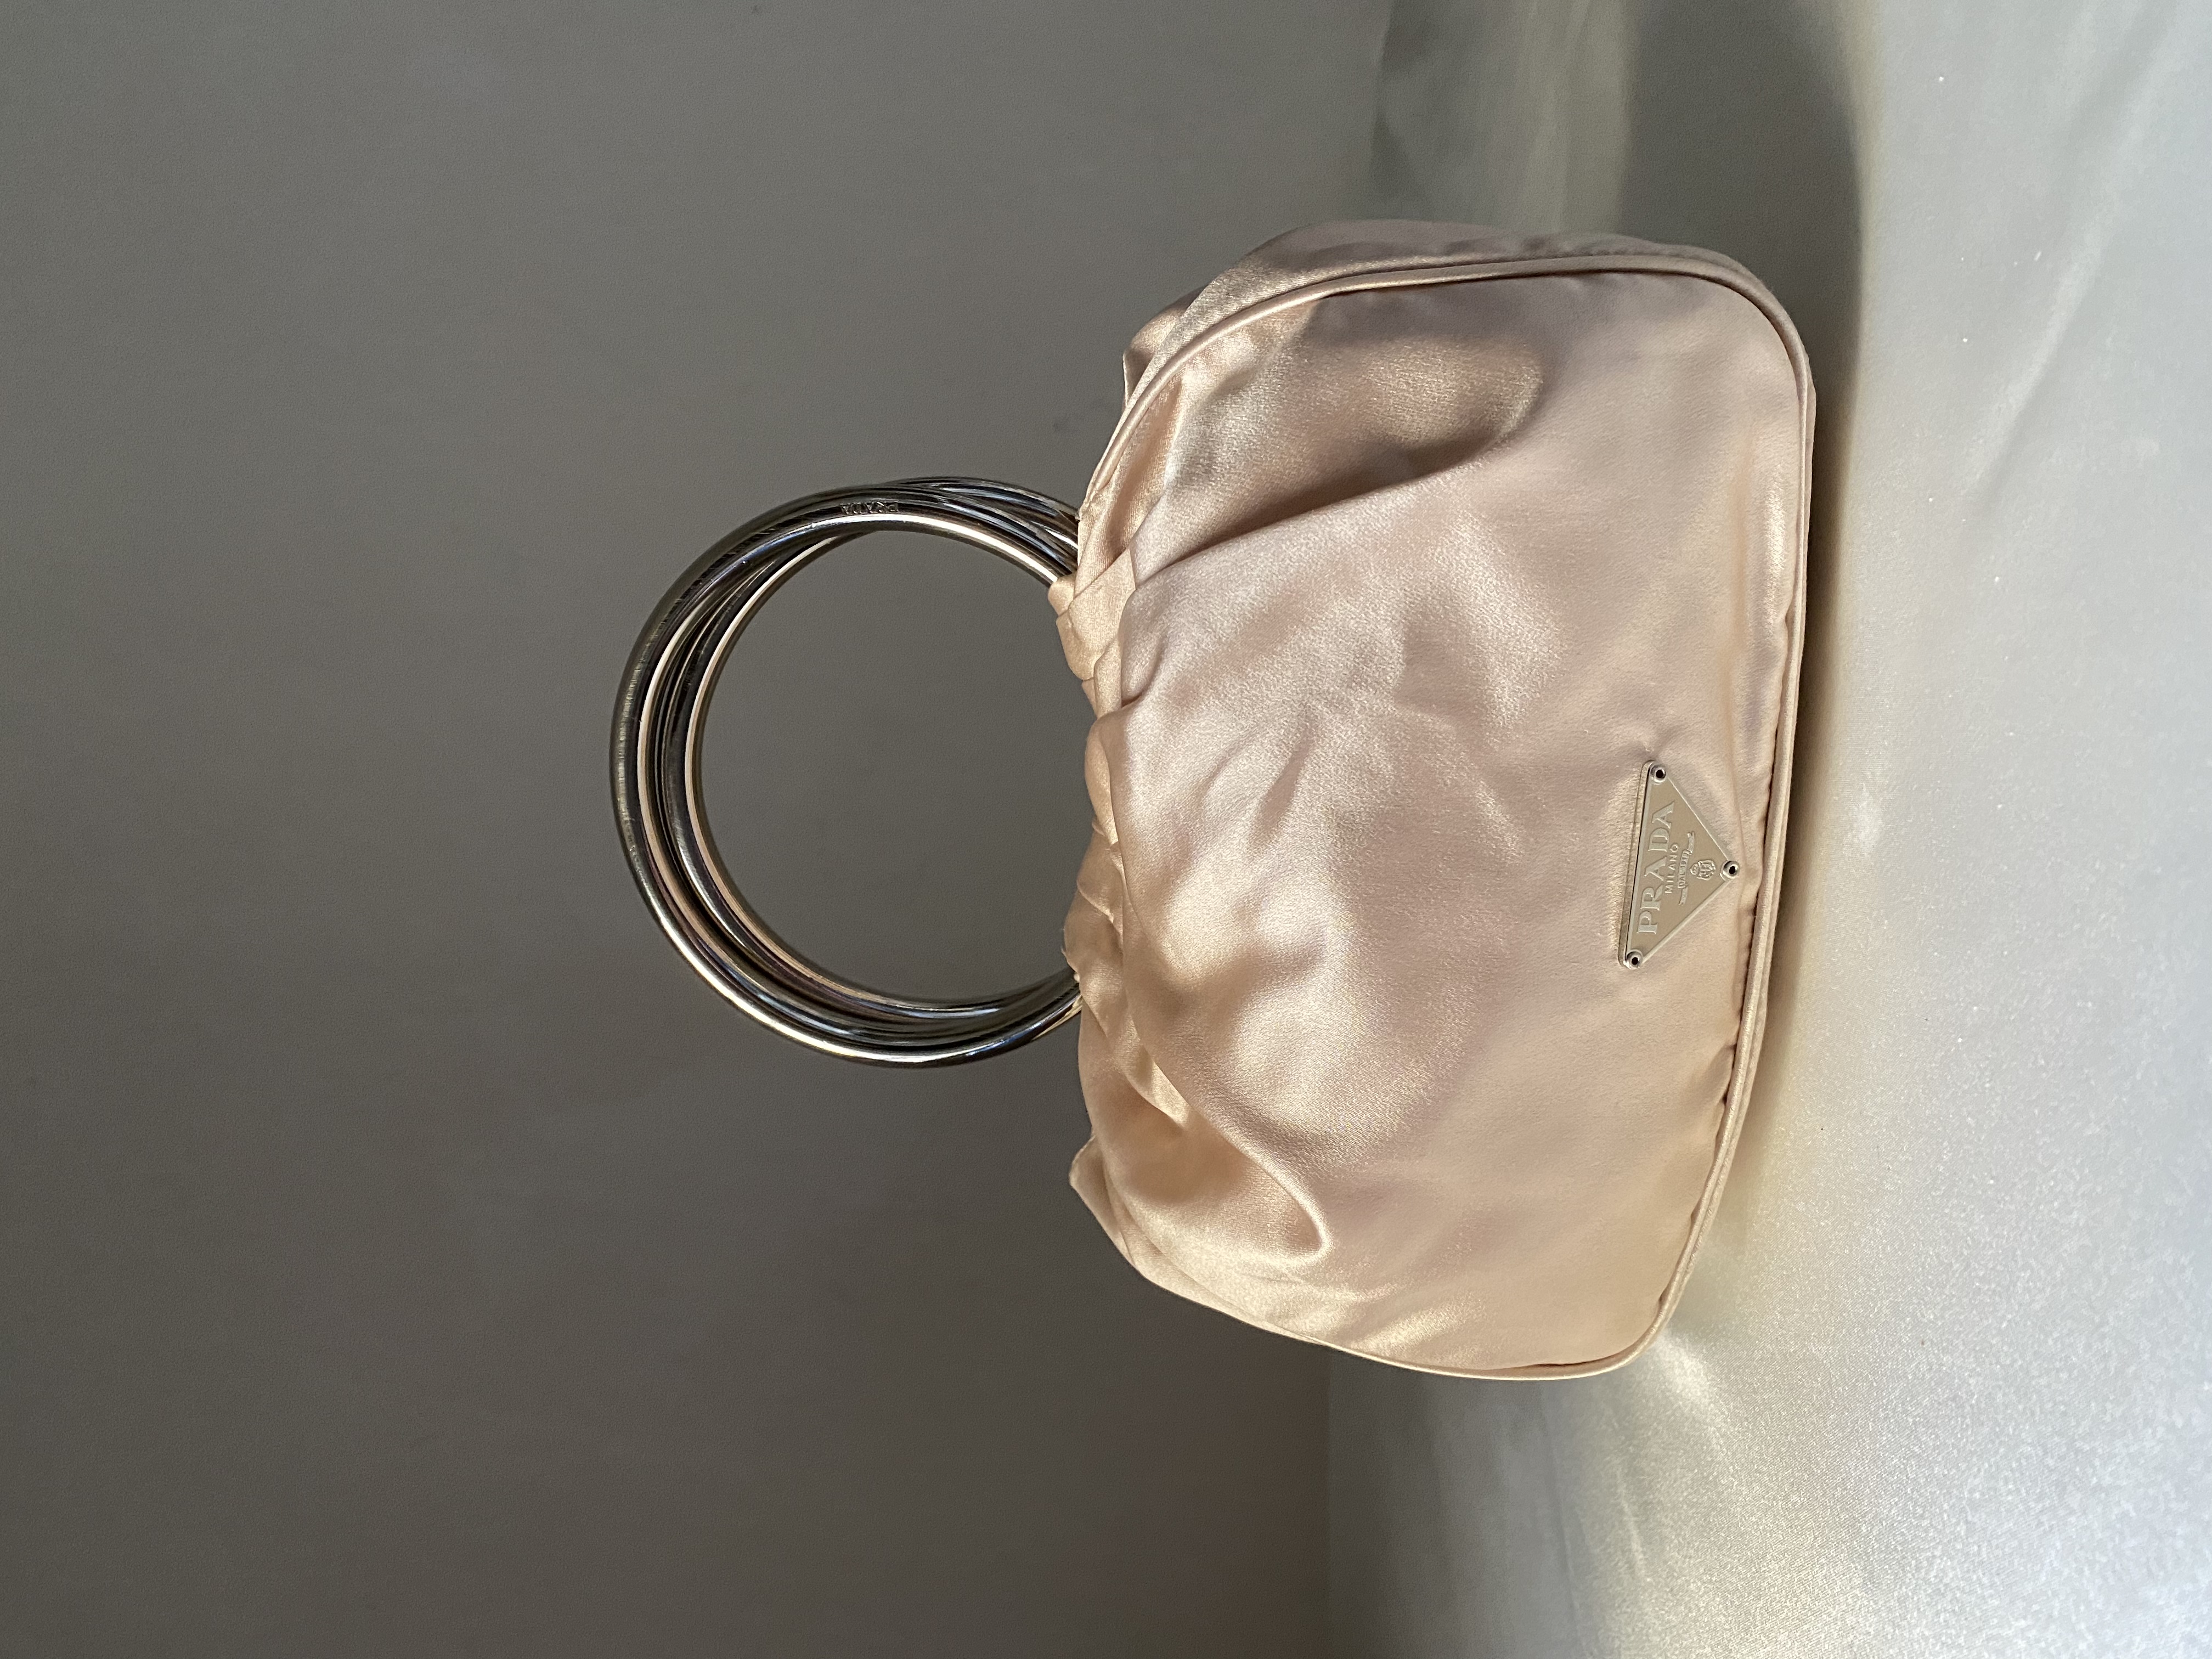 PRADA tote bag with metal handles - Vintage by Ebba AB